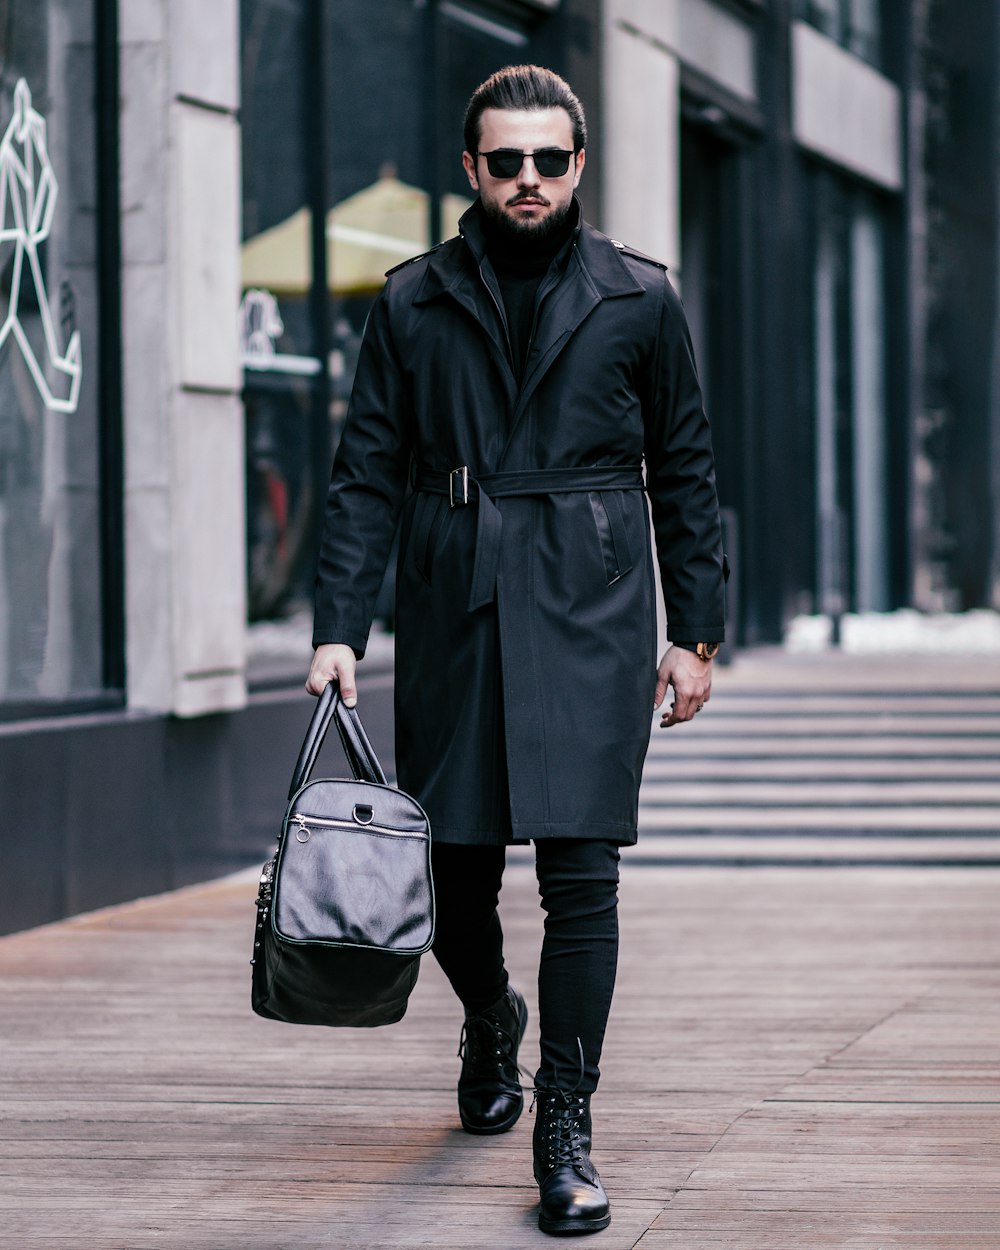 Un hombre caminando por una calle con una bolsa